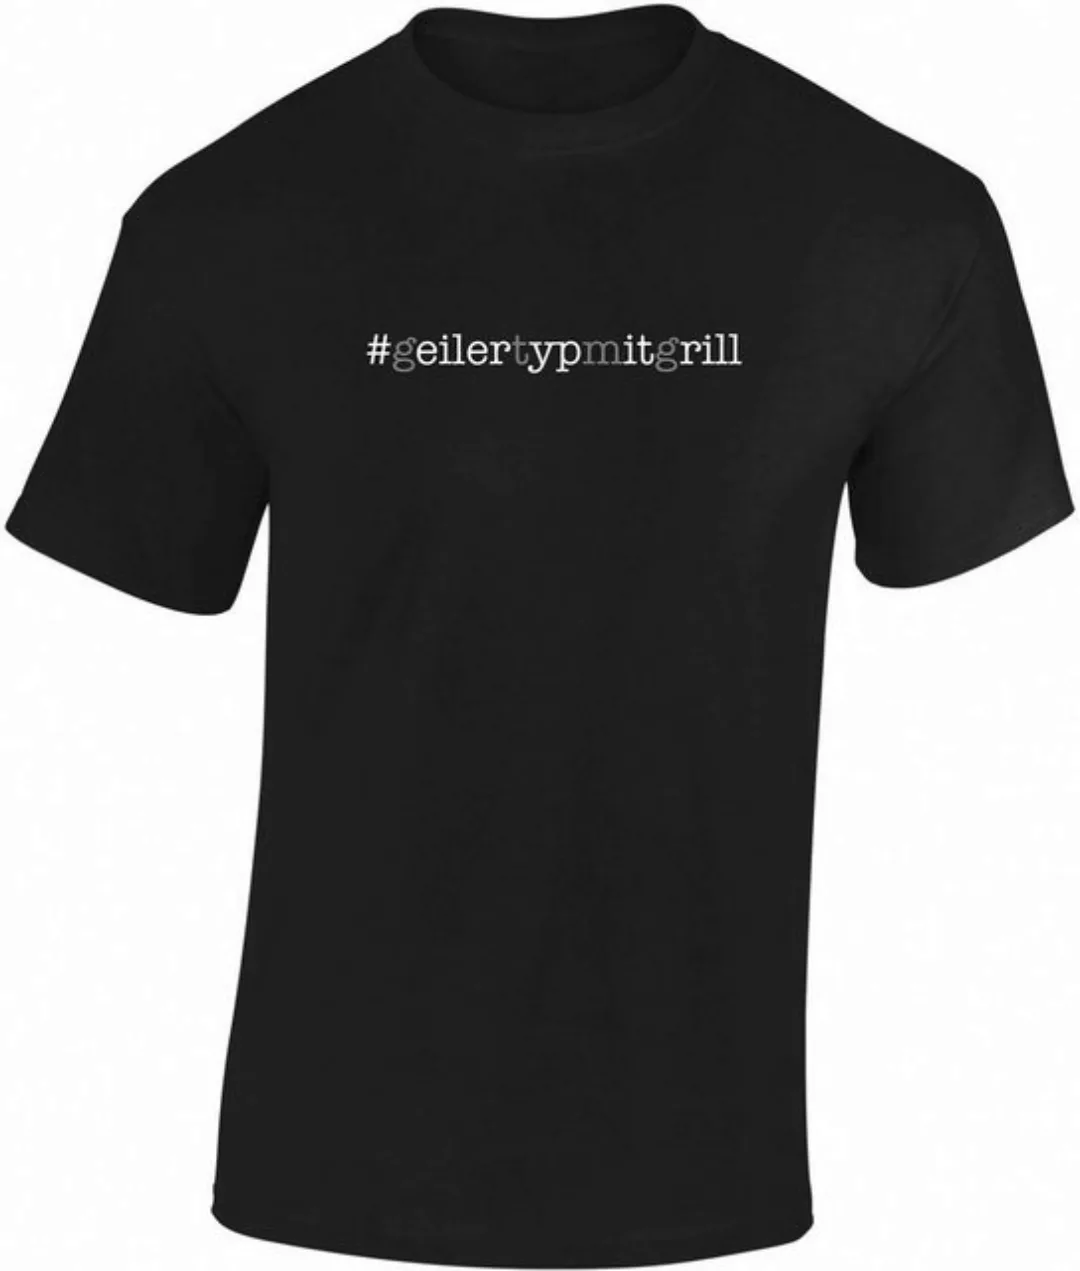 Baddery Print-Shirt Fun T-Shirt: "Geiler Typ mit Grill" - Grillen Grillmeis günstig online kaufen